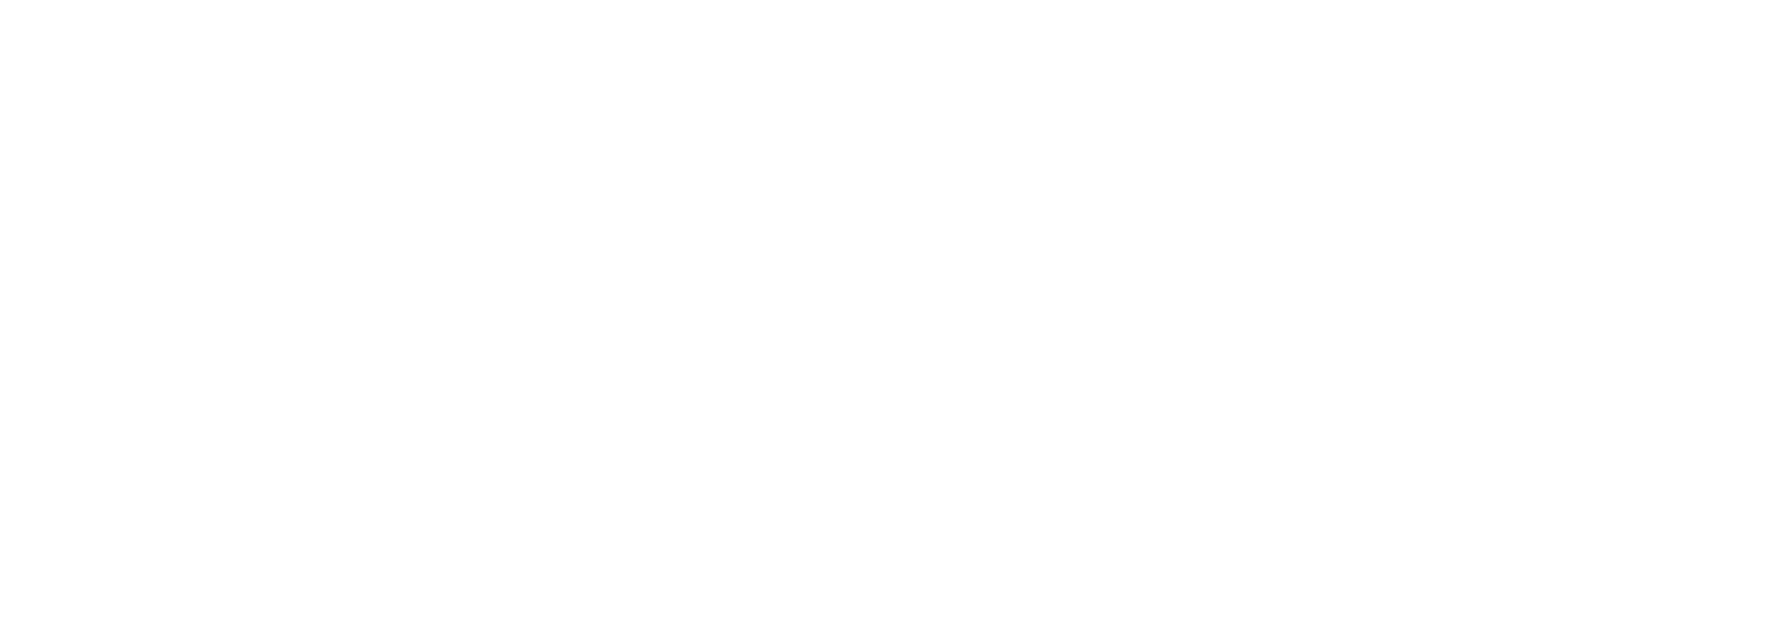 Scanning The Horizon logo